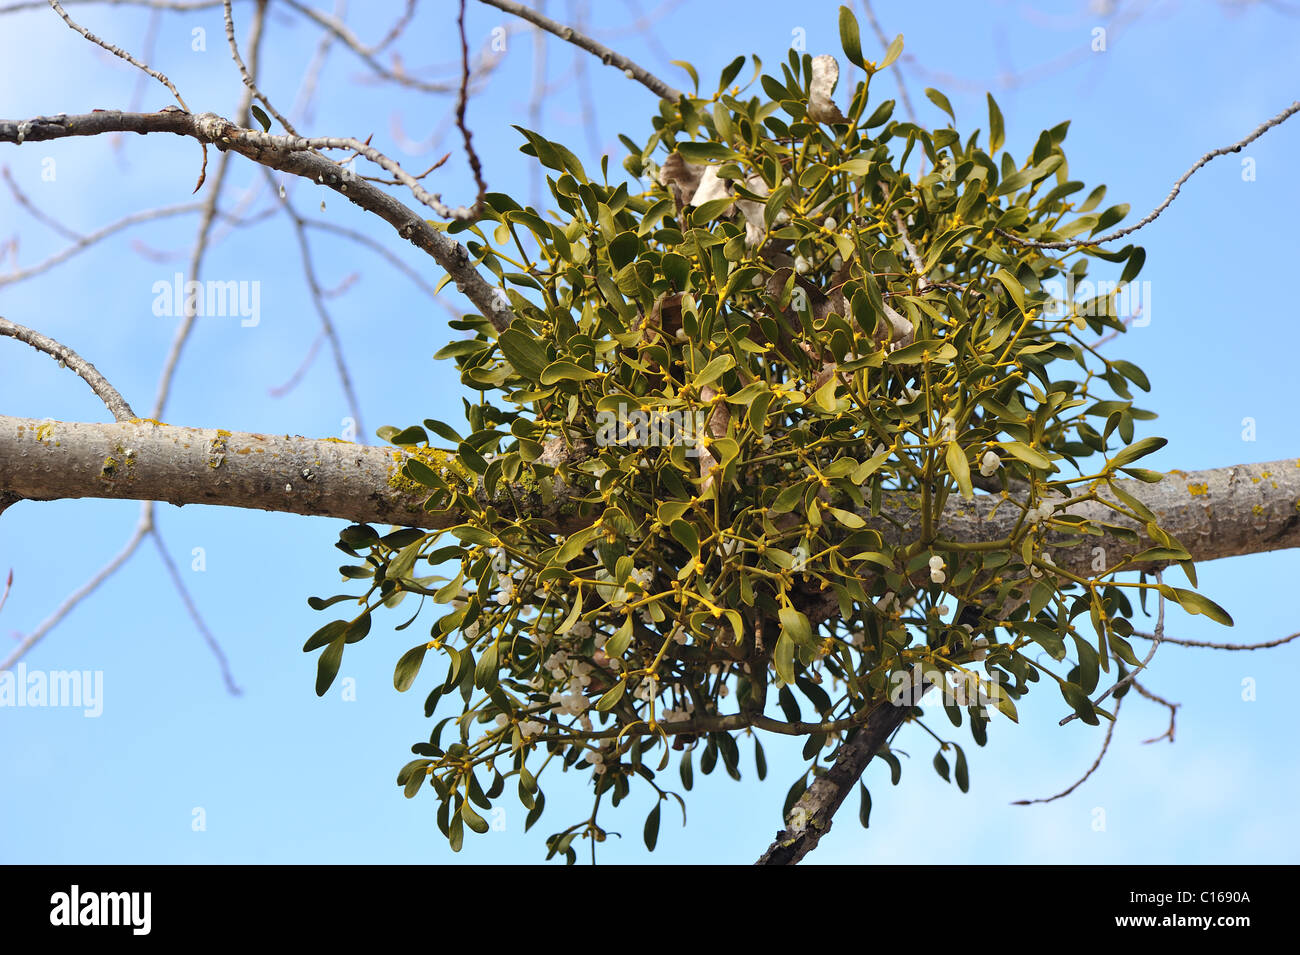 Europäische Mistel (Viscum Album) Hemi-parasitäre Strauch wächst auf Zweigen von einer Pappel im Winter - Vaucluse - Provence - Frankreich Stockfoto